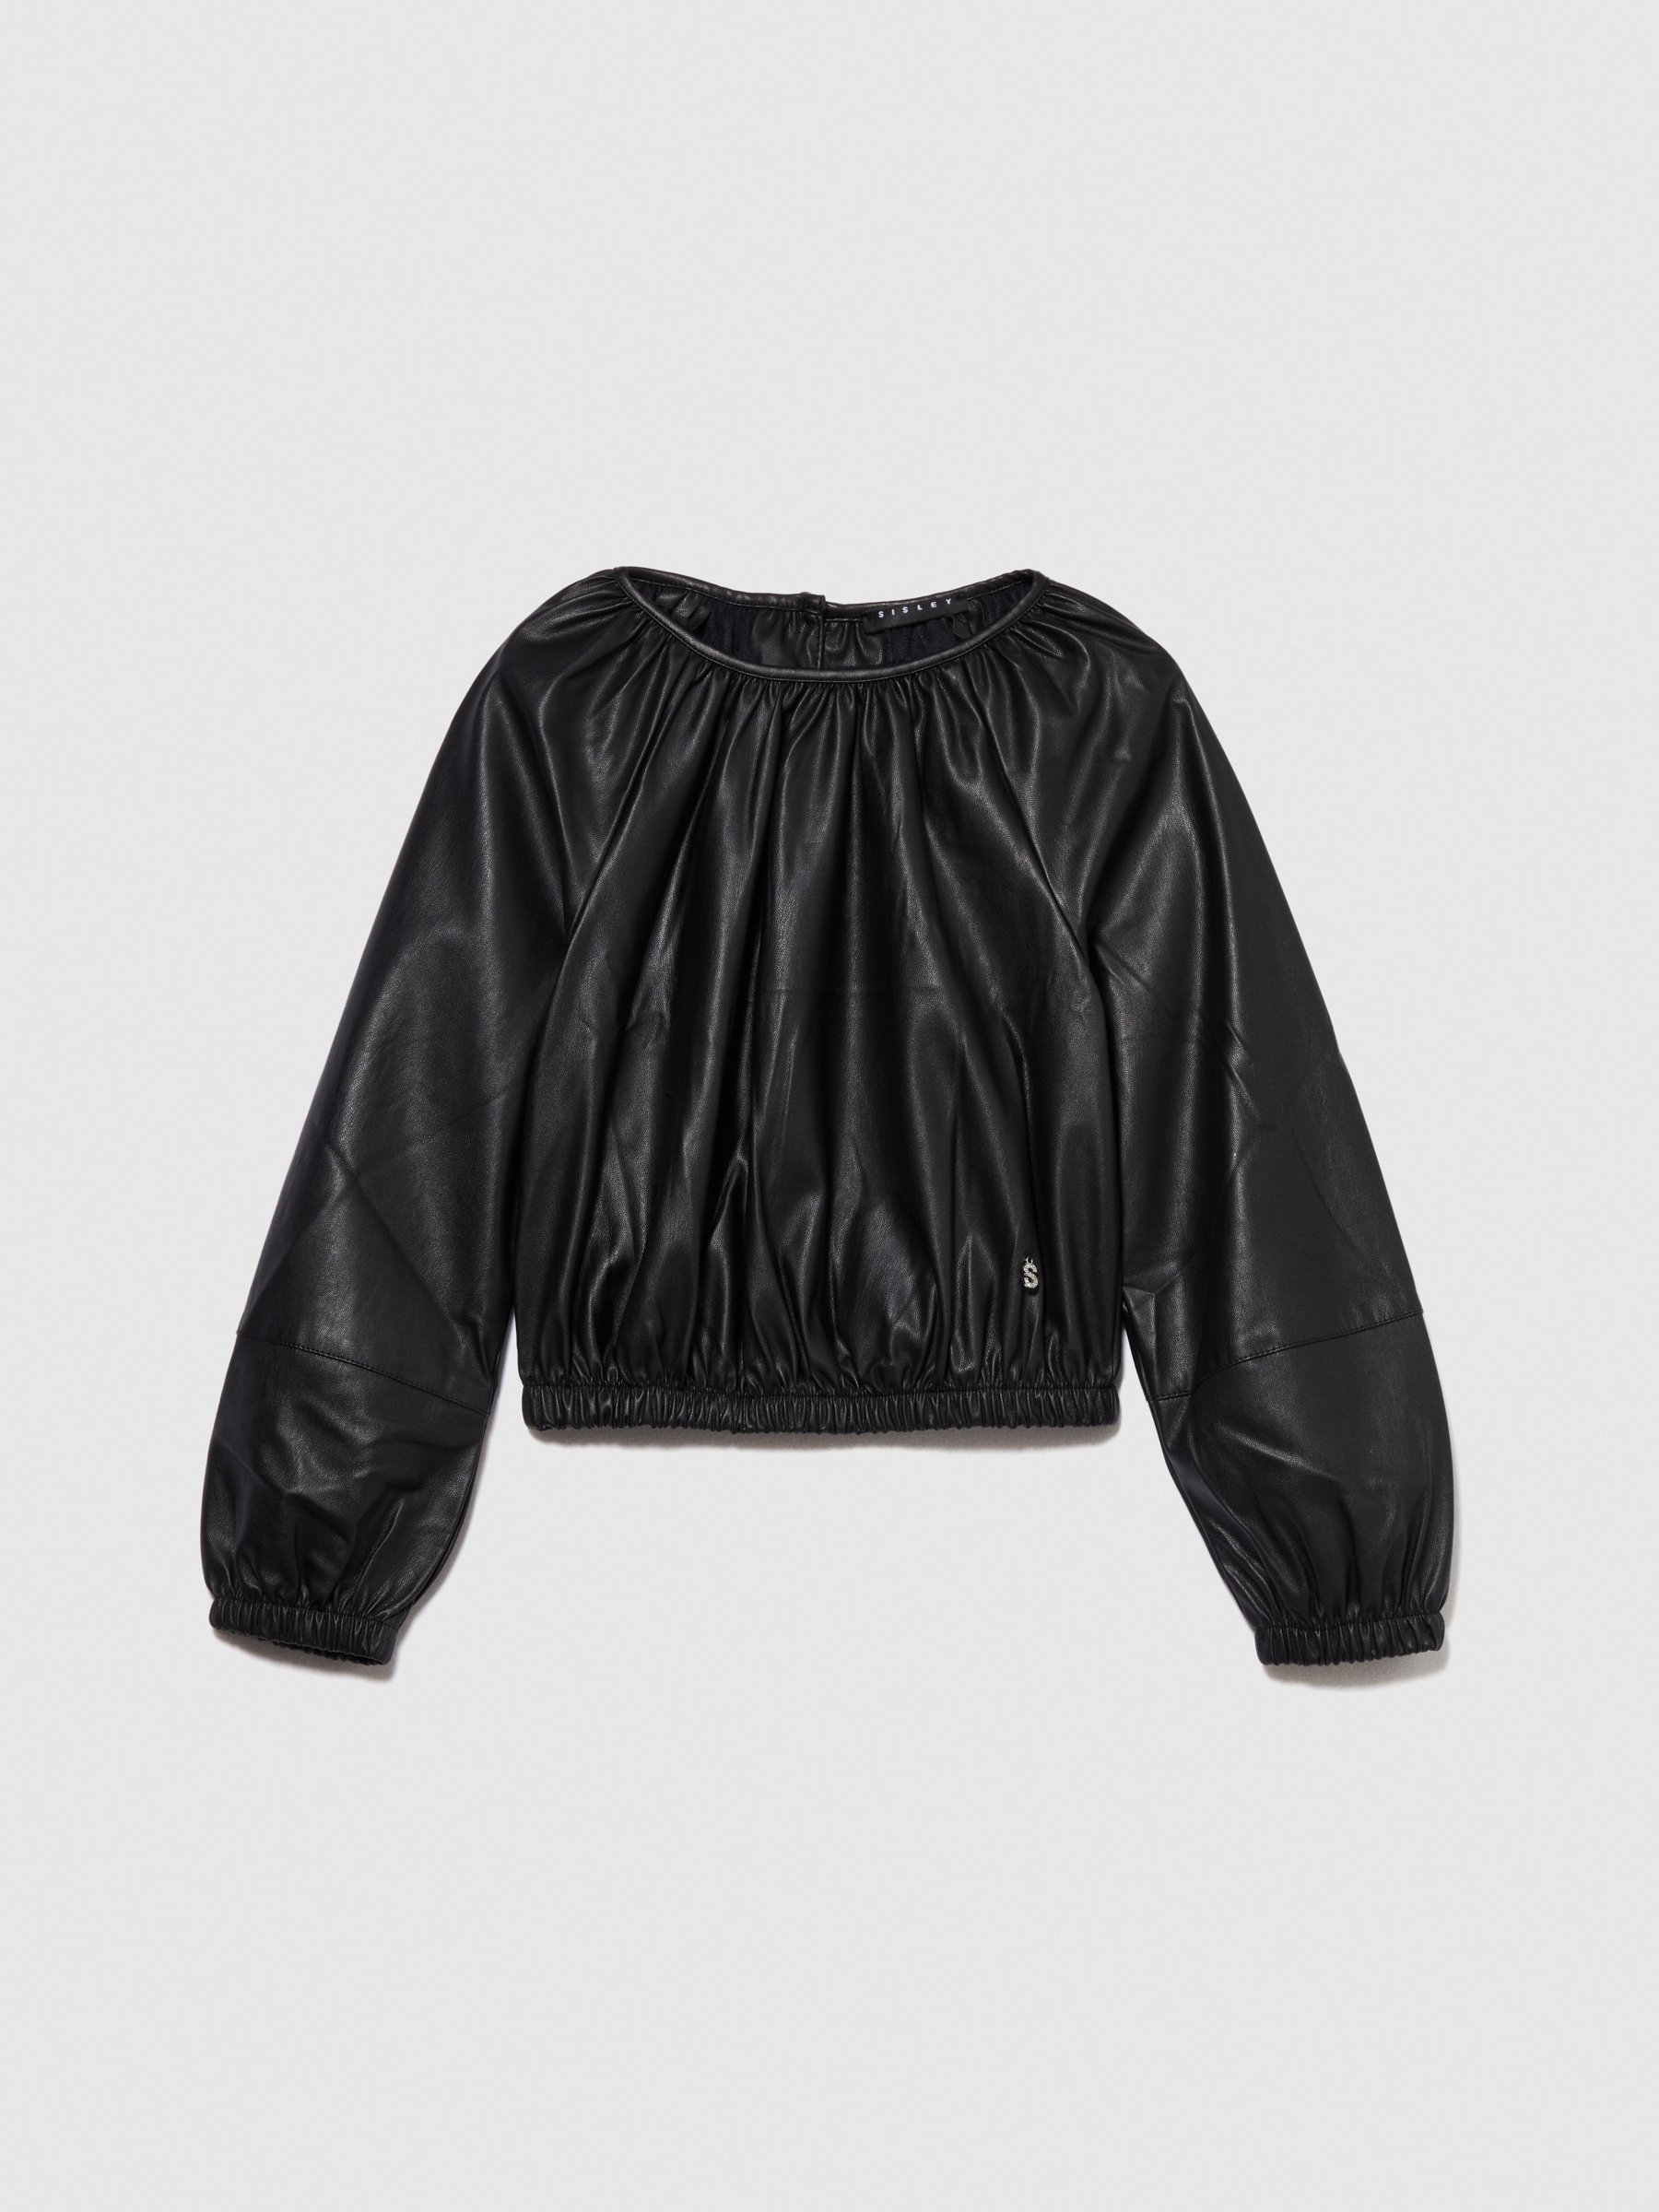 Sisley Young - Cropped Blouse, Woman, Black, Size: XS